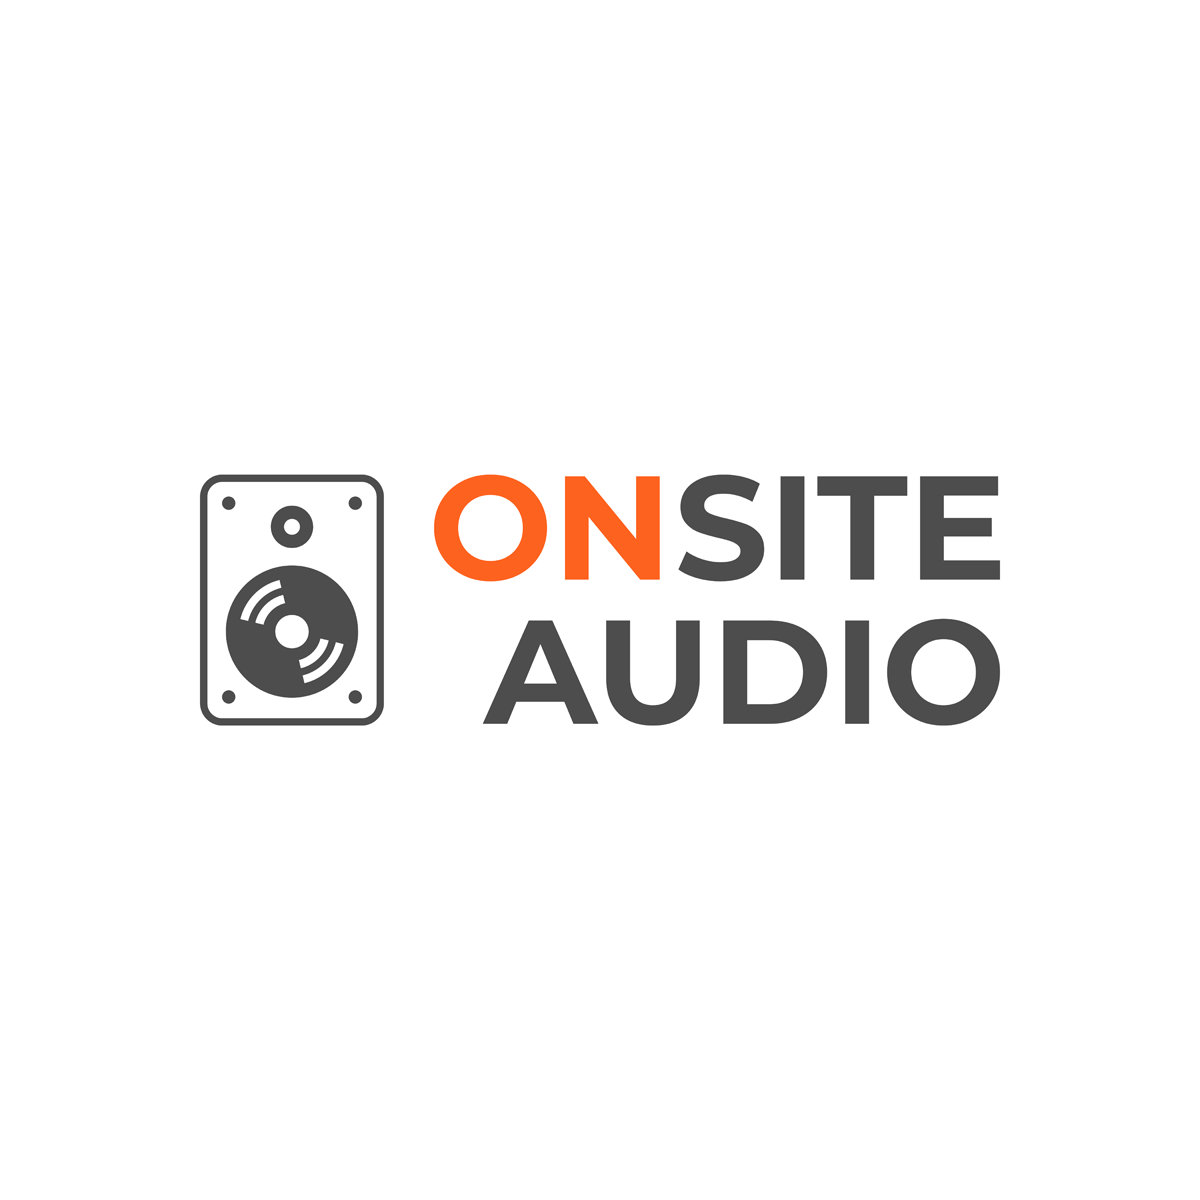 Onsite Audio